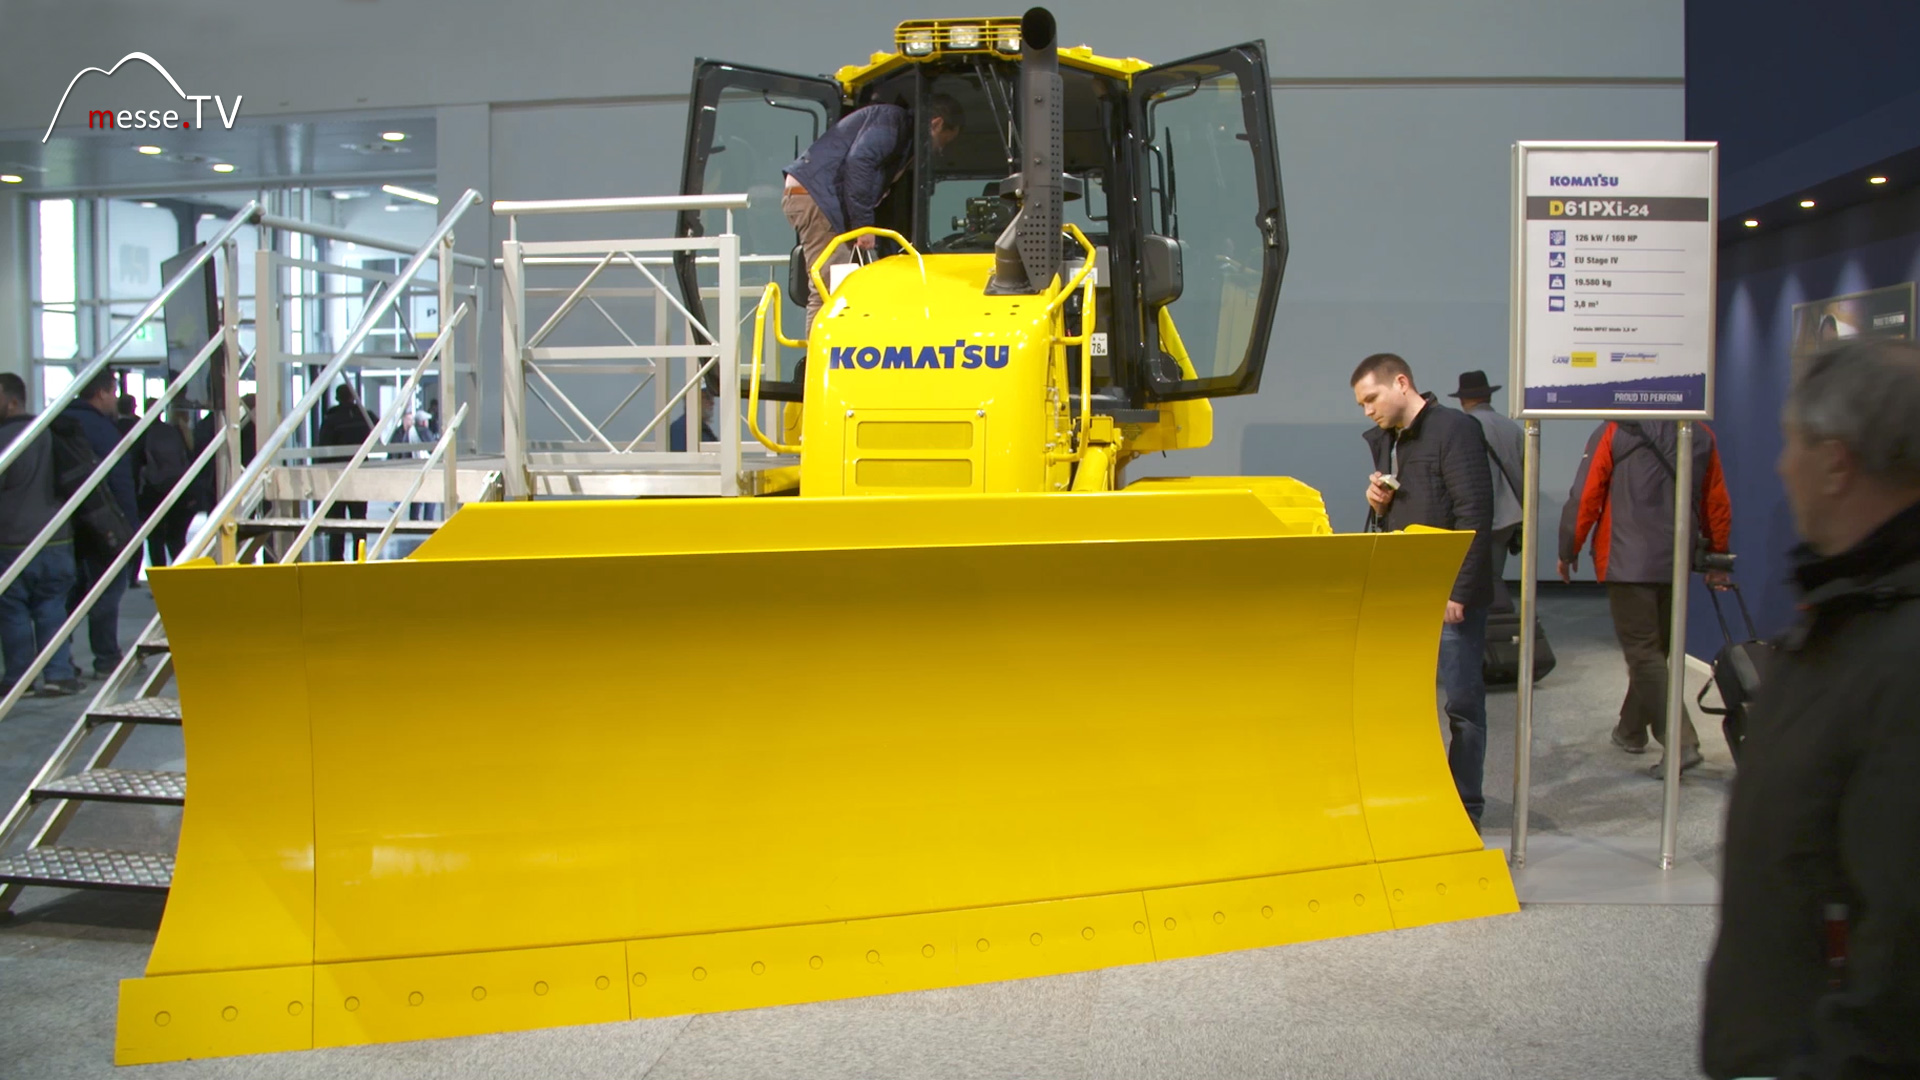 KOMATSU bulldozer D61PXi 24 bauma 2019 trade fair Munich